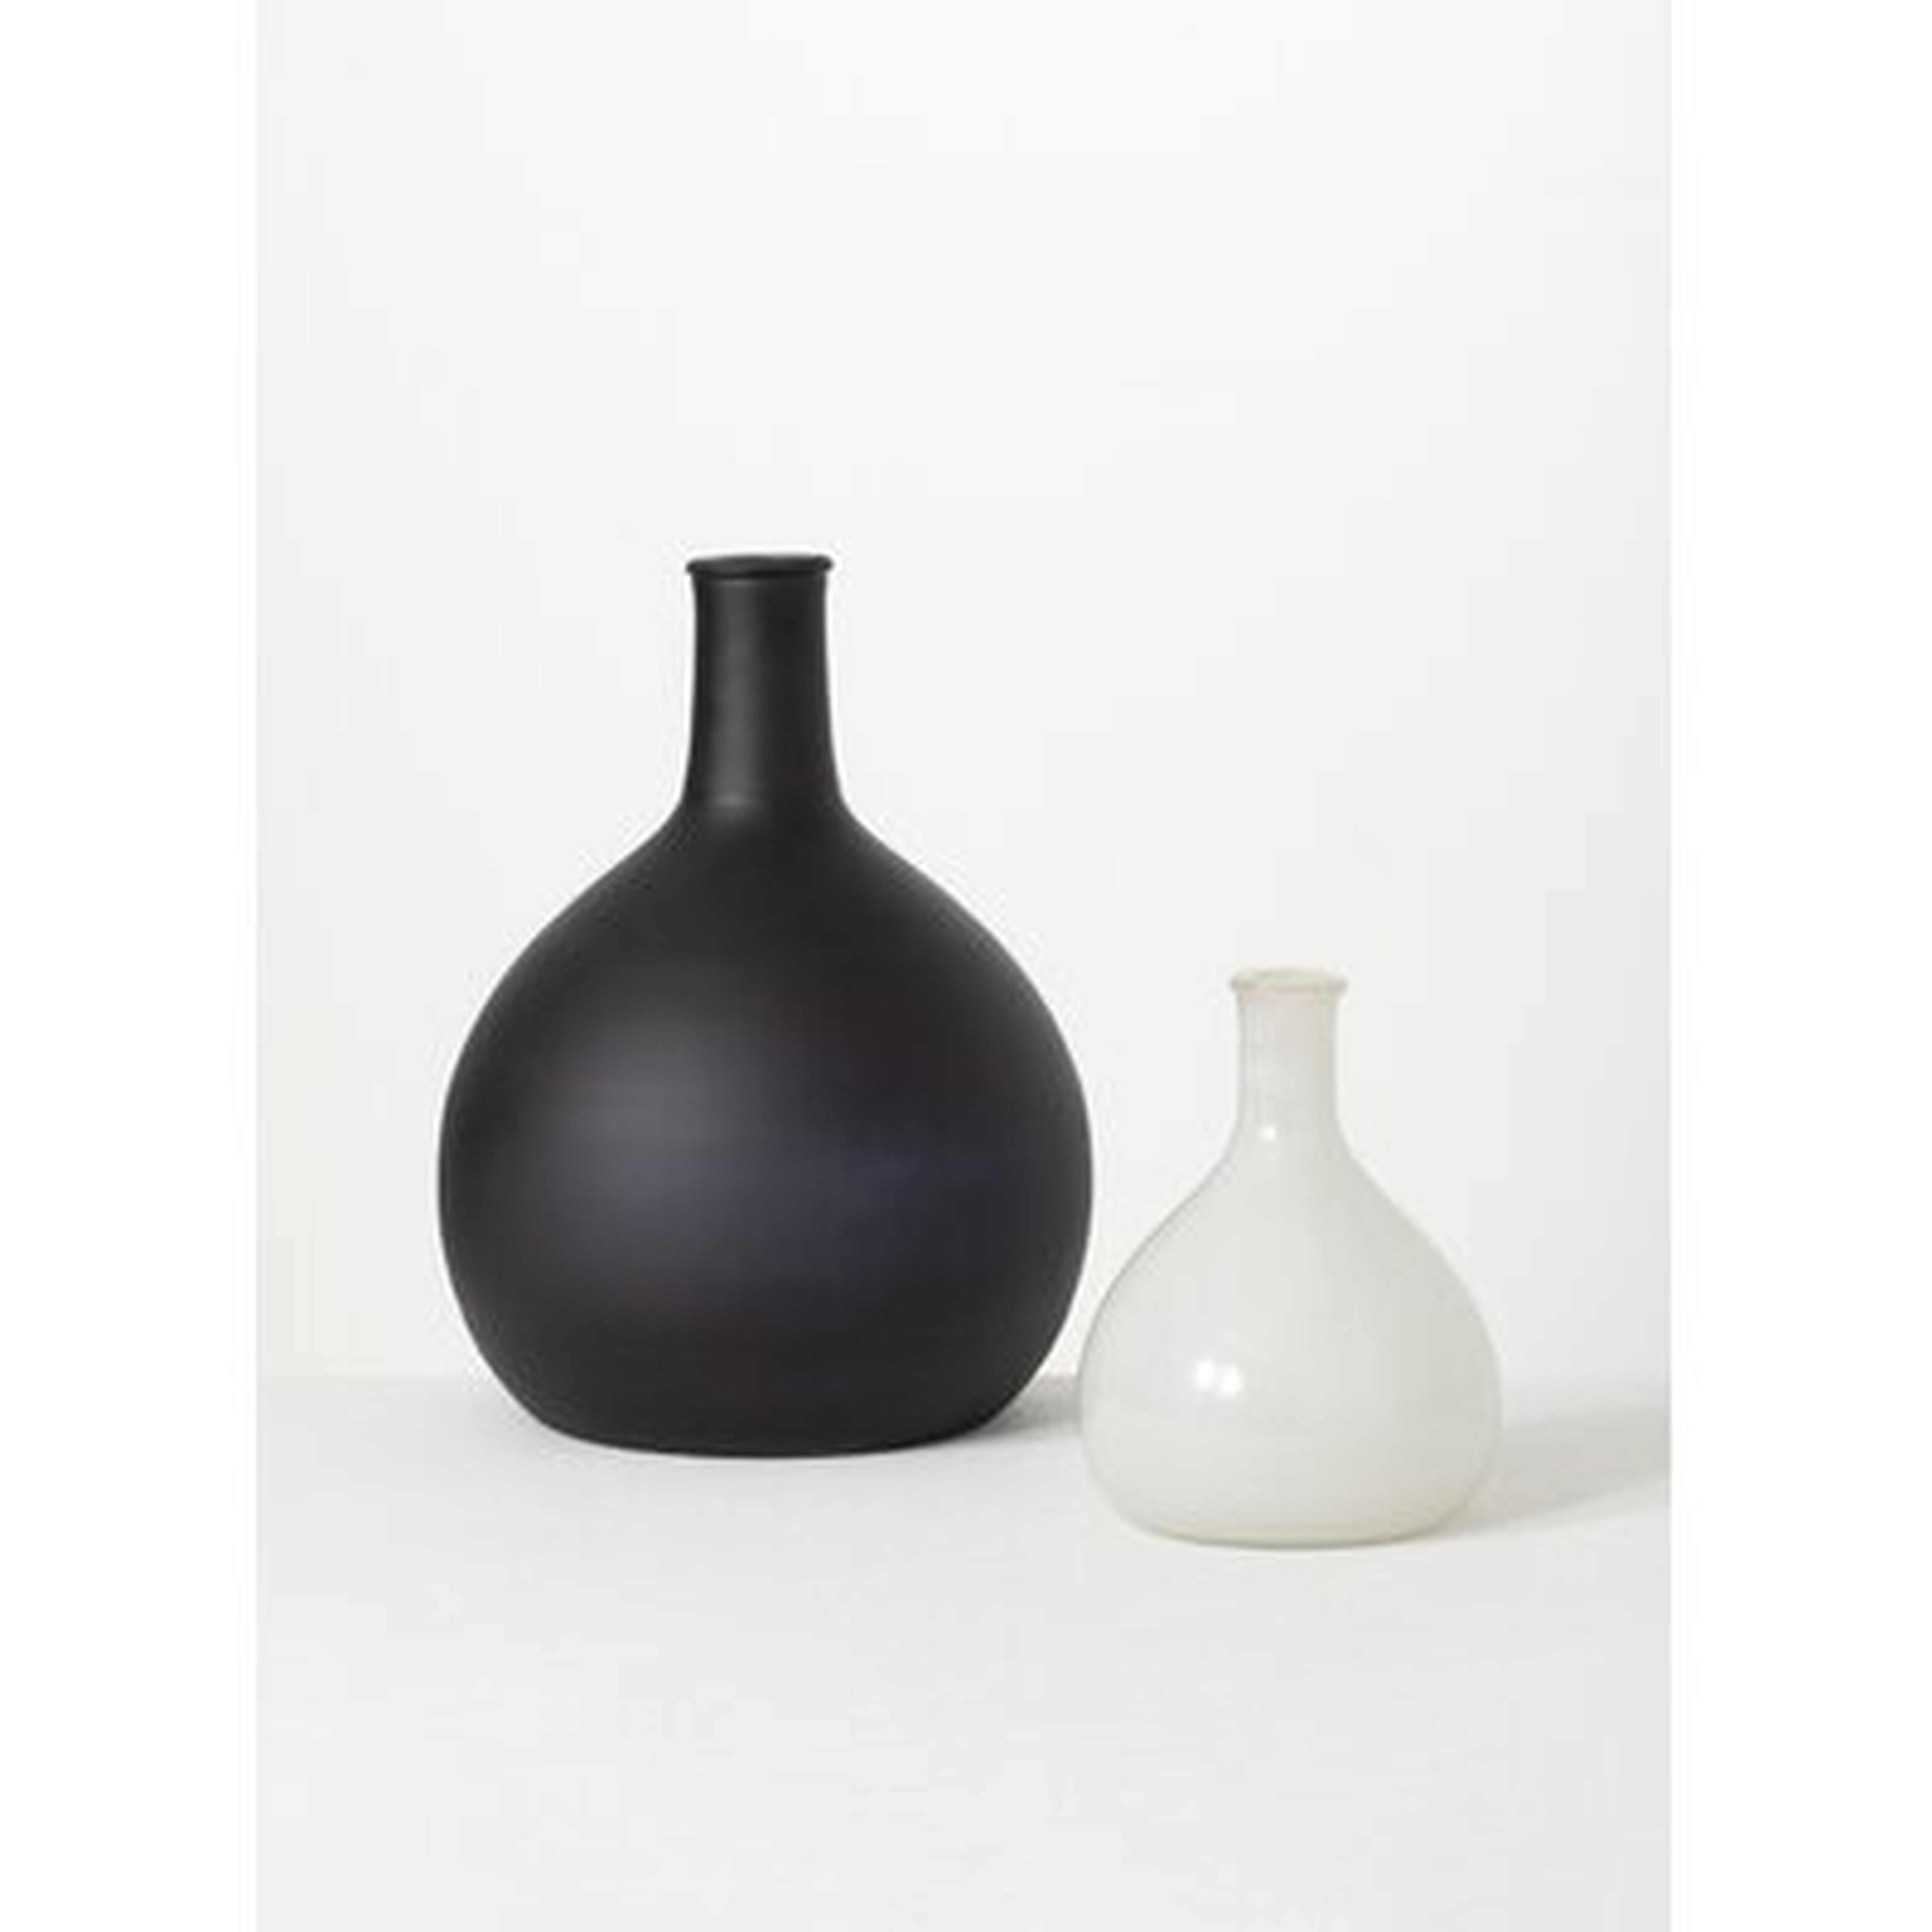 Aldred Glass Table Vases, Black & White, Set of 2 - Wayfair